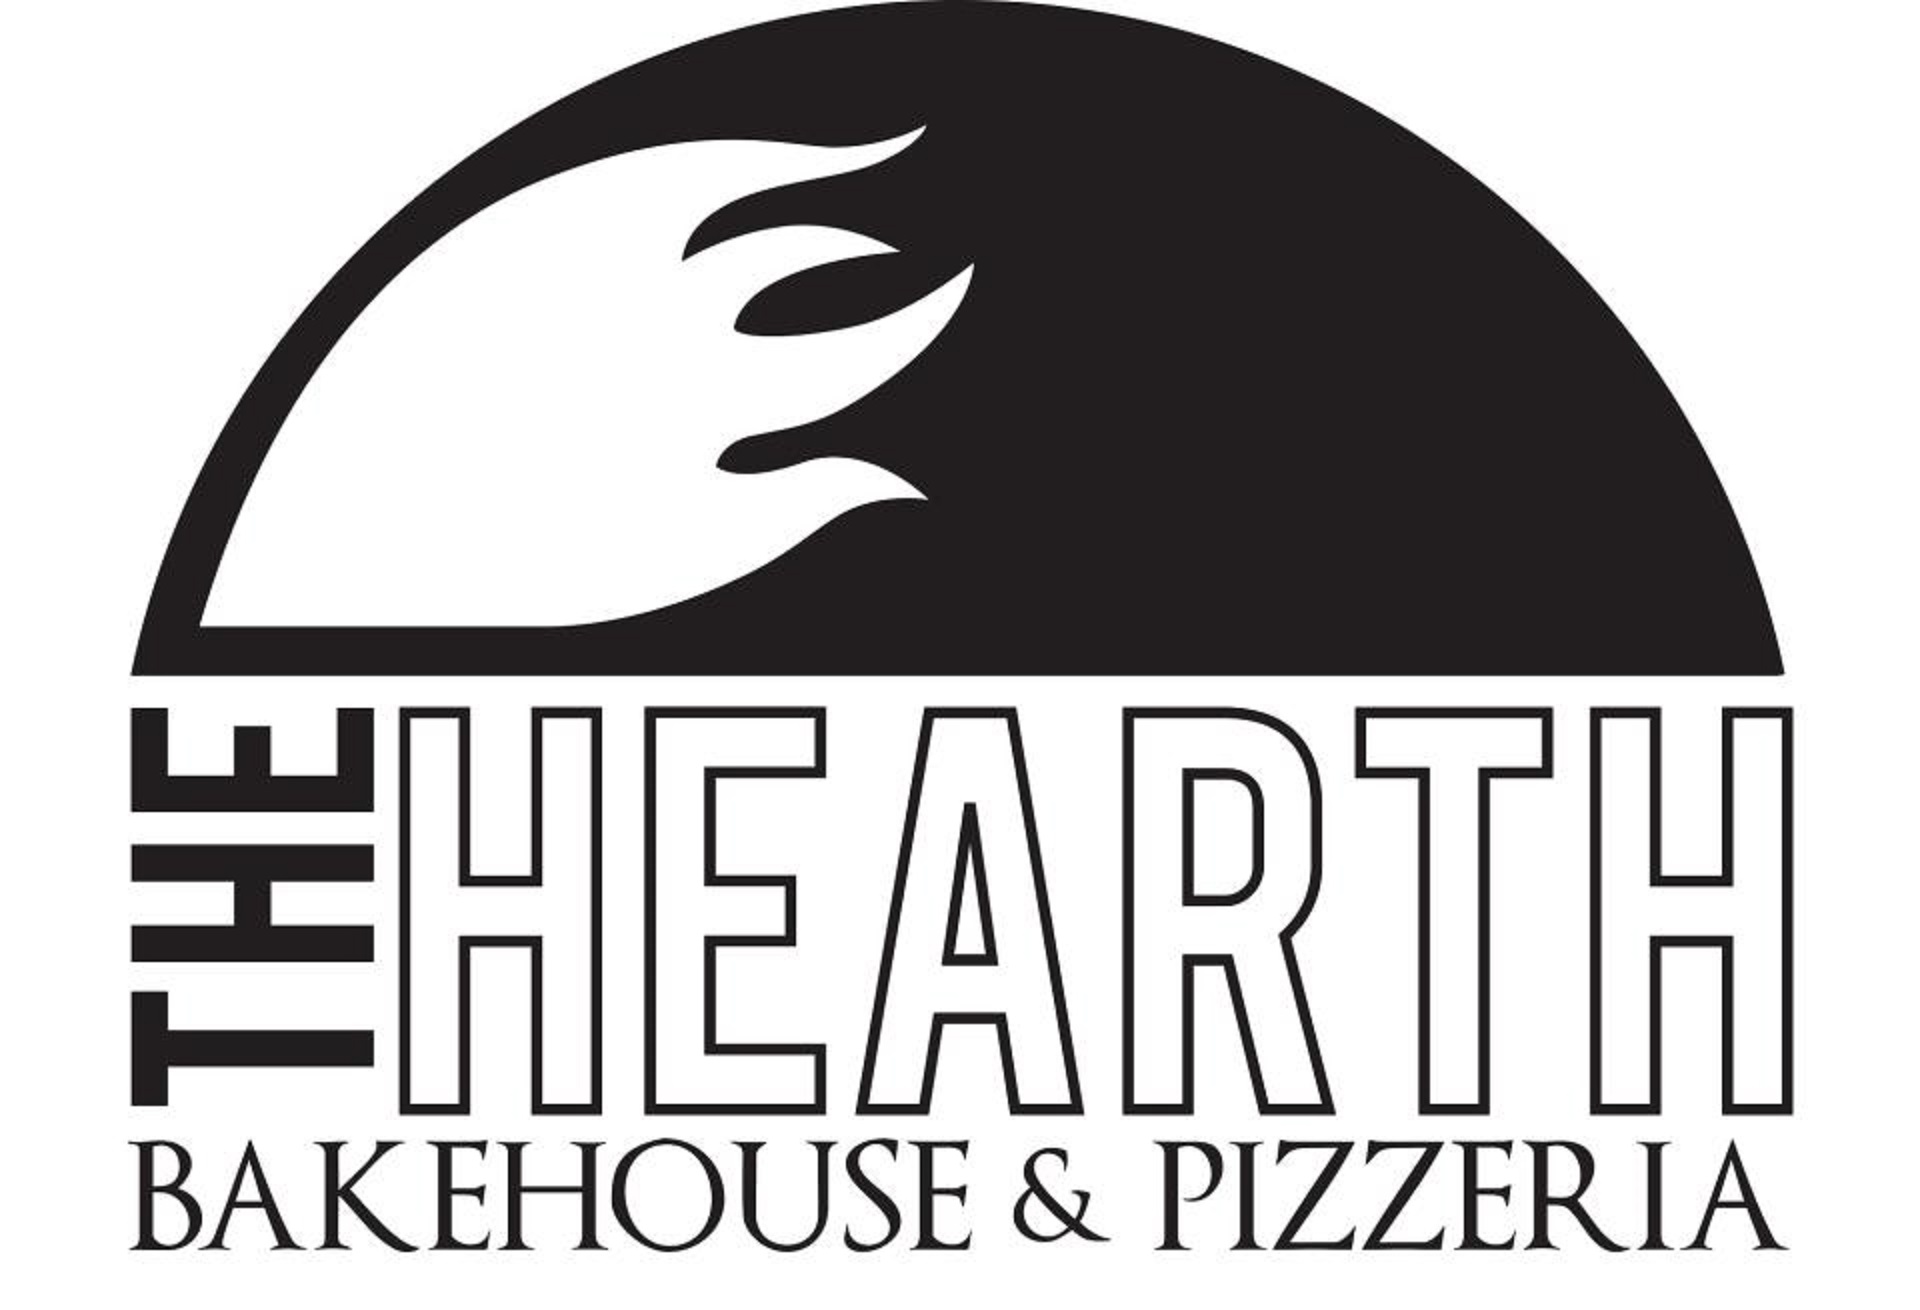 The Hearth